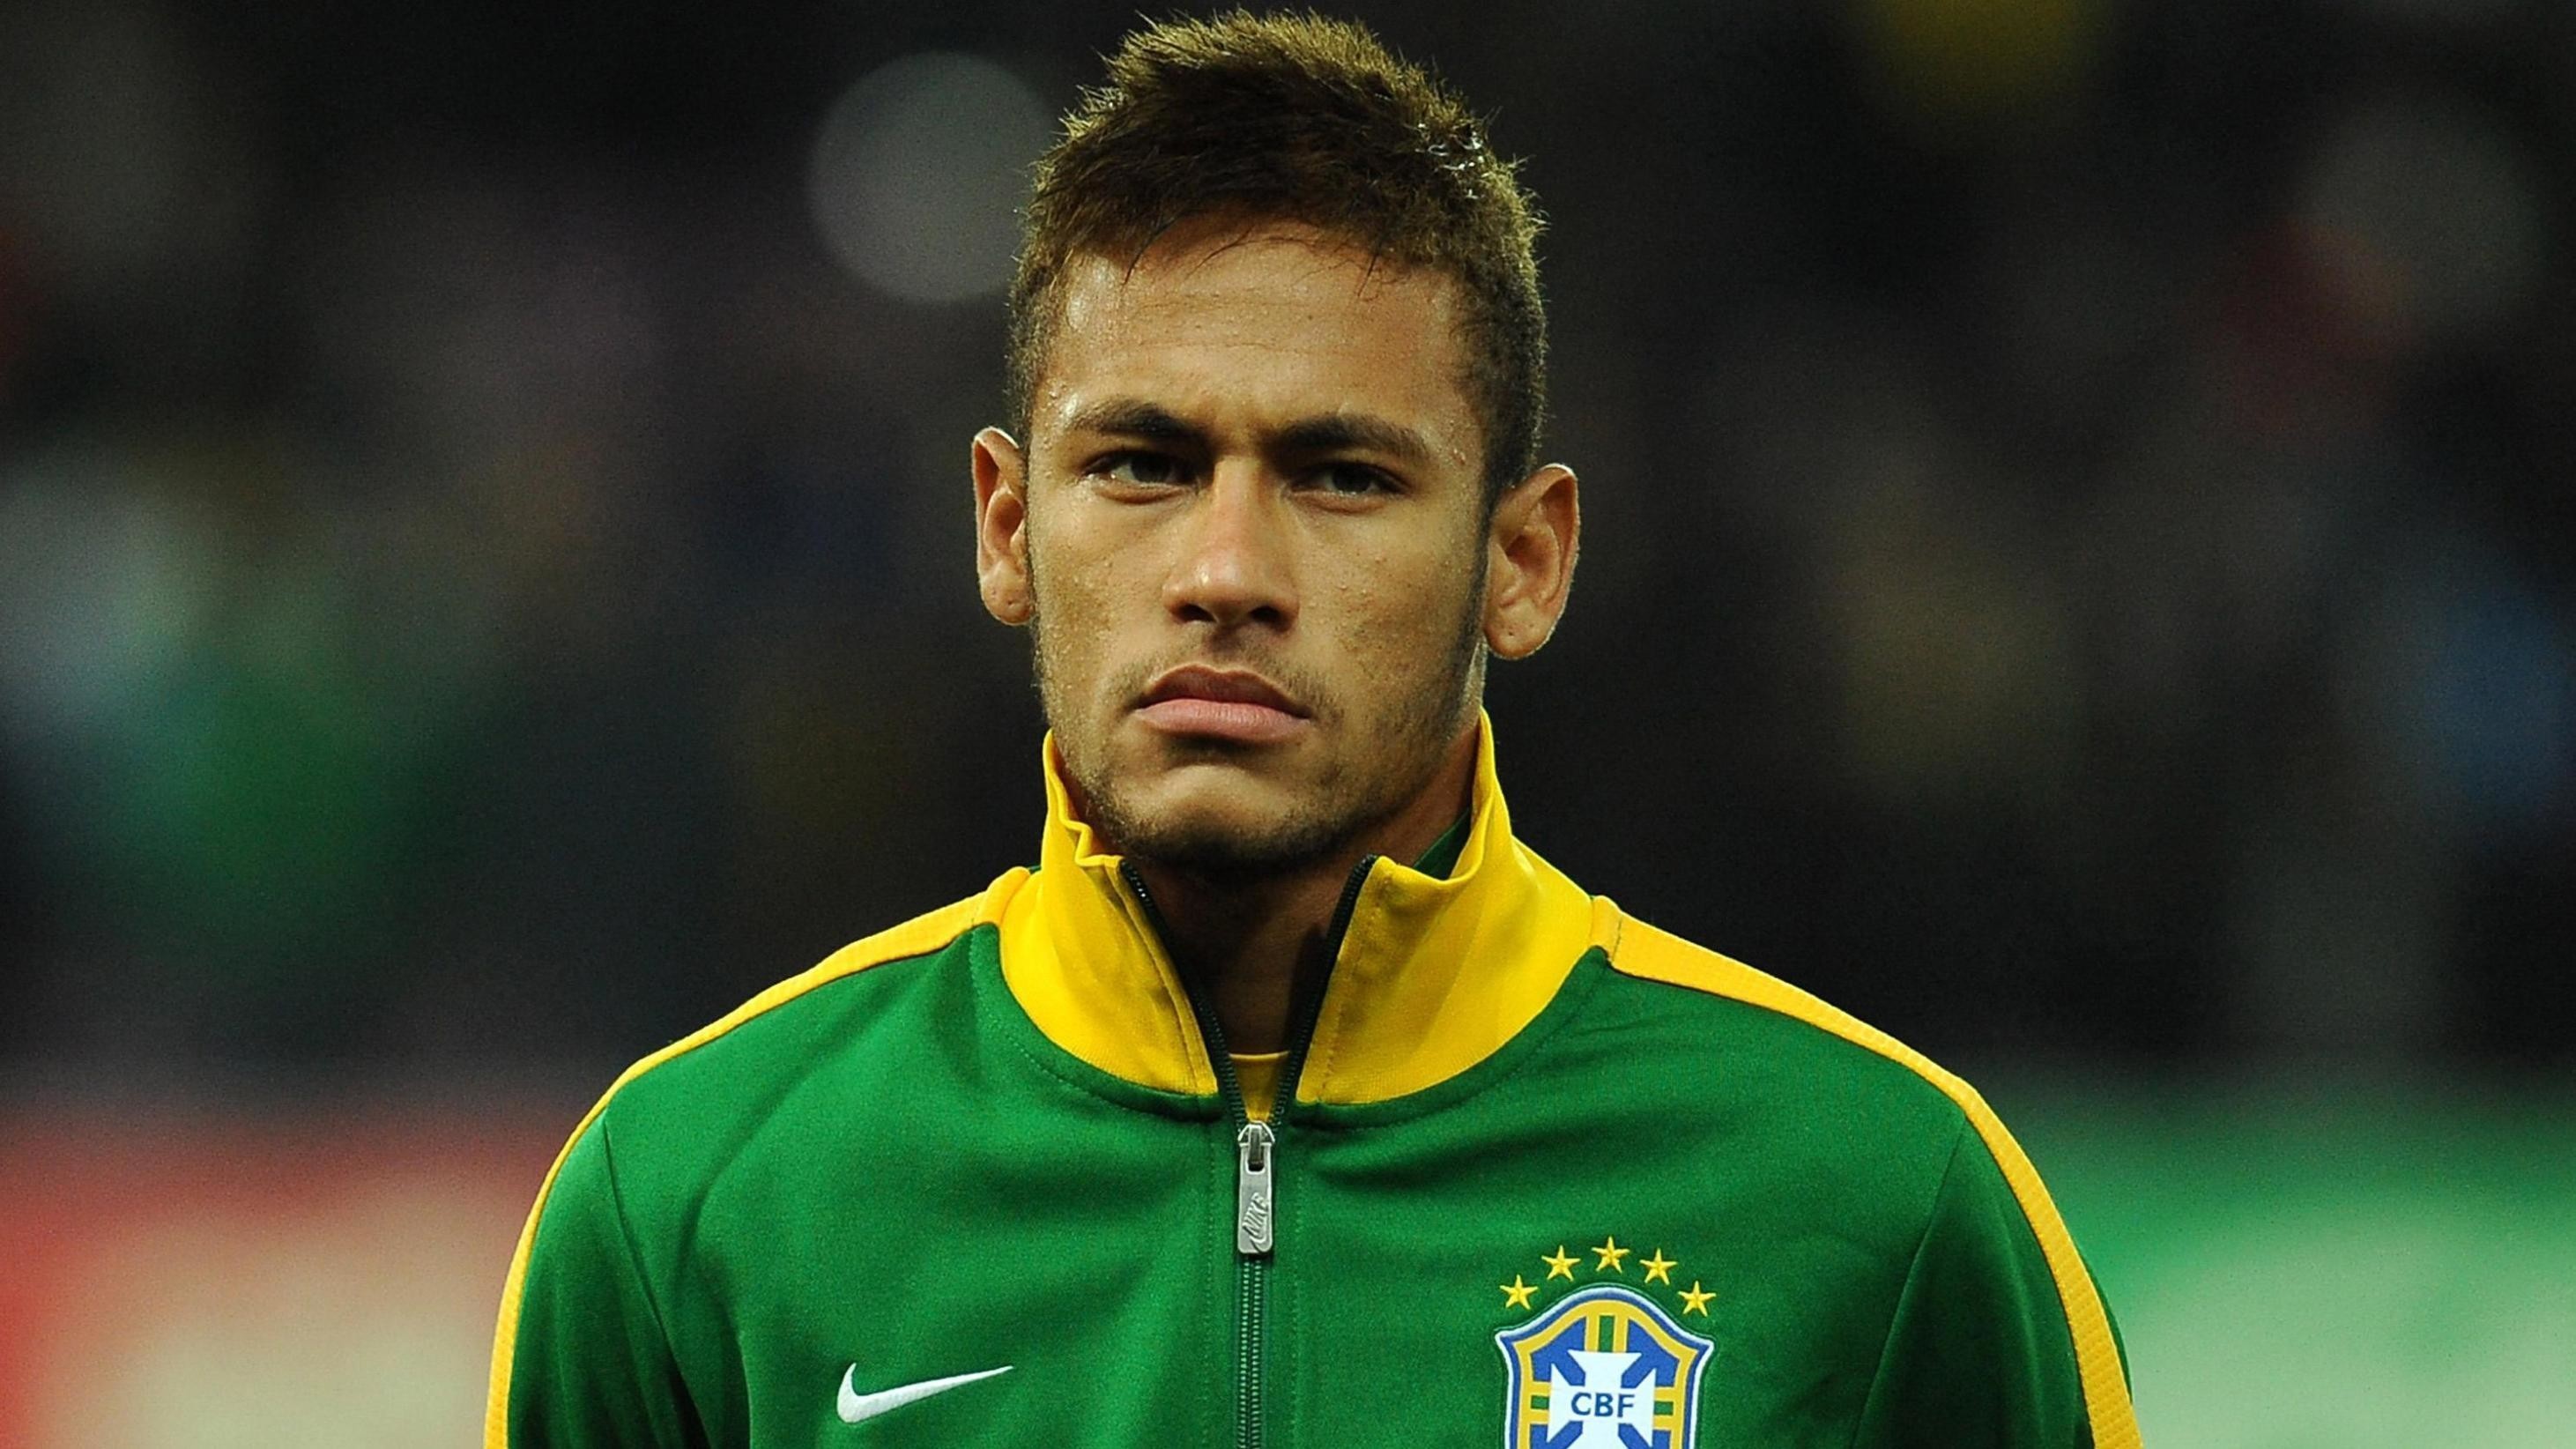 2923x1644  Neymar Brazil 2014 FIFA World Cup Wallpaper Free Download |  walpic.